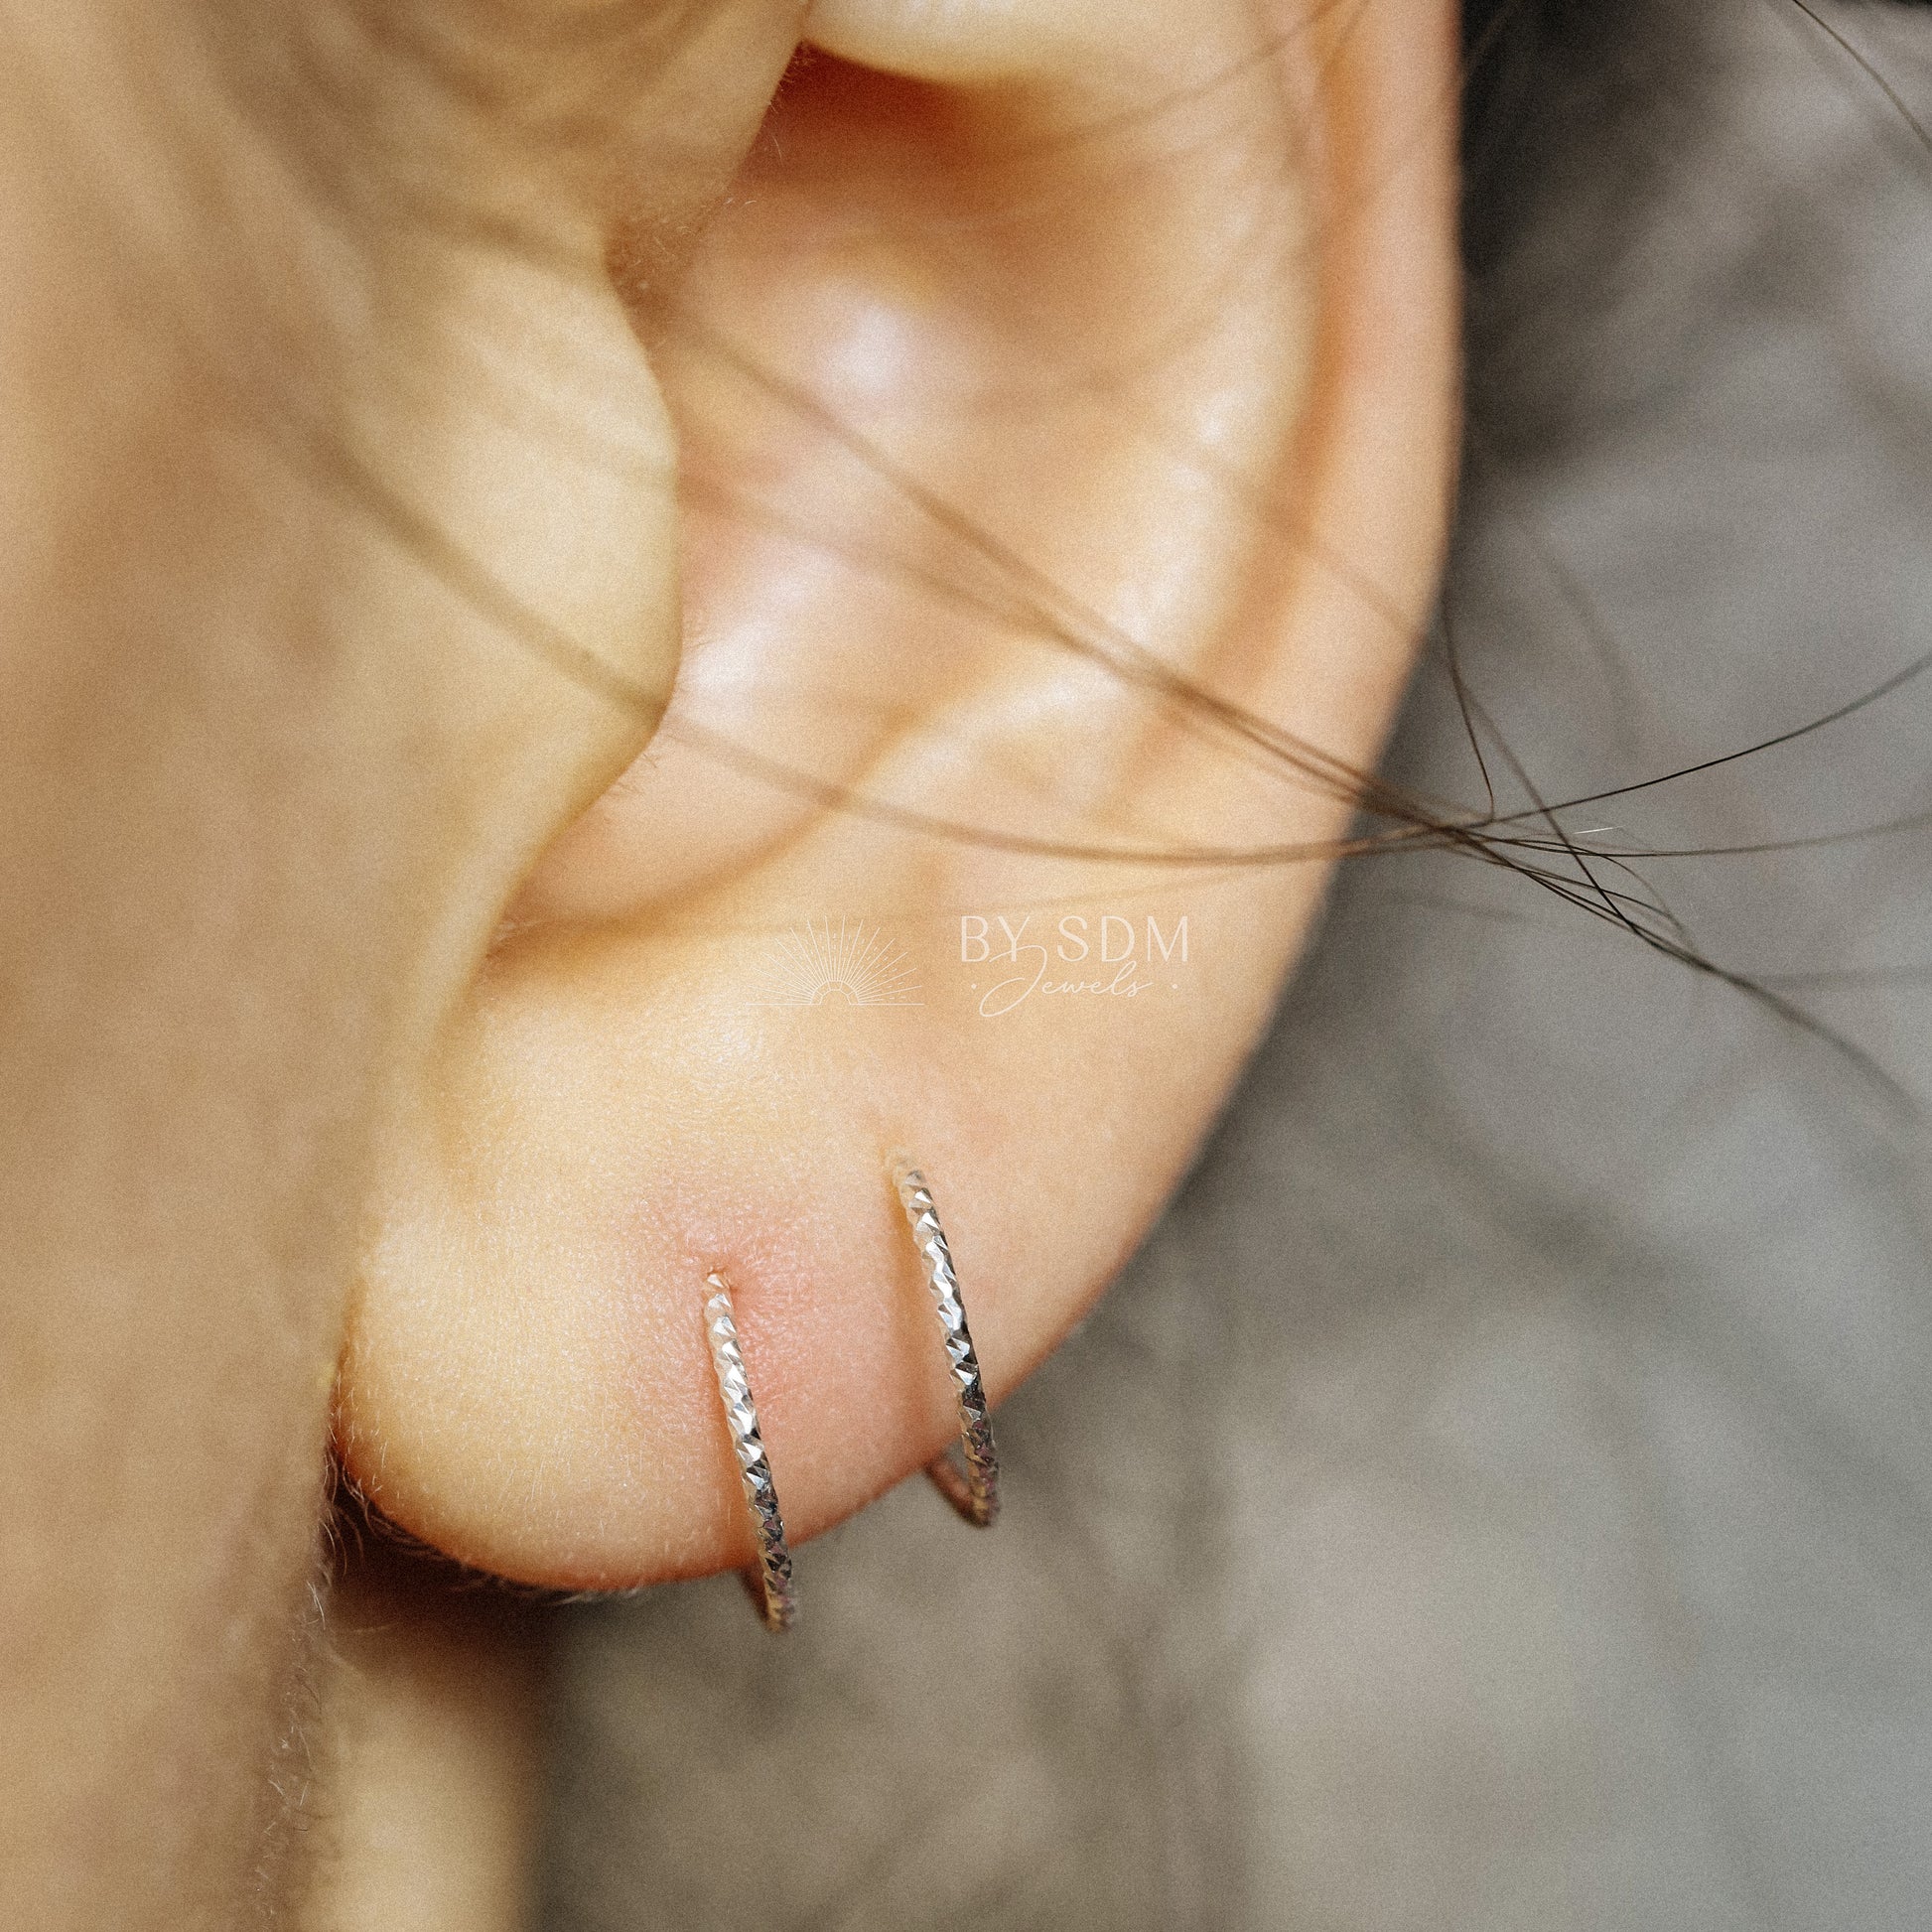 Huggie Hoop Earrings Tiny Spiral Earrings Small Hoop Earrings Hug Hoops Textured Open Hoop Earrings Diamond Cut Double Hole Earrings